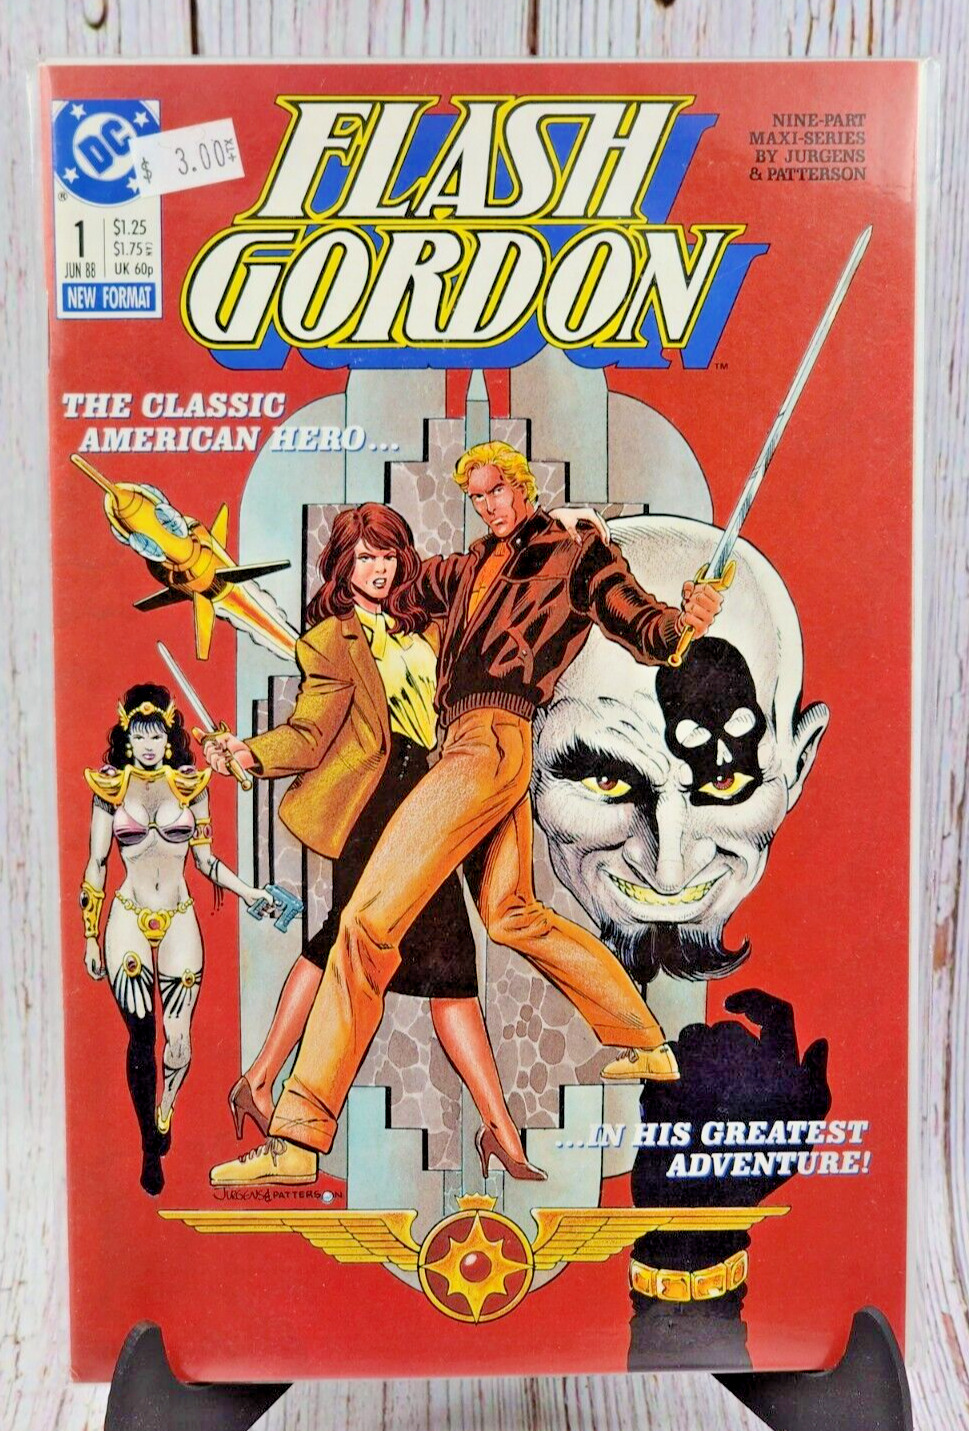 FLASH GORDON #1 DC Comics 1988 JURGENS